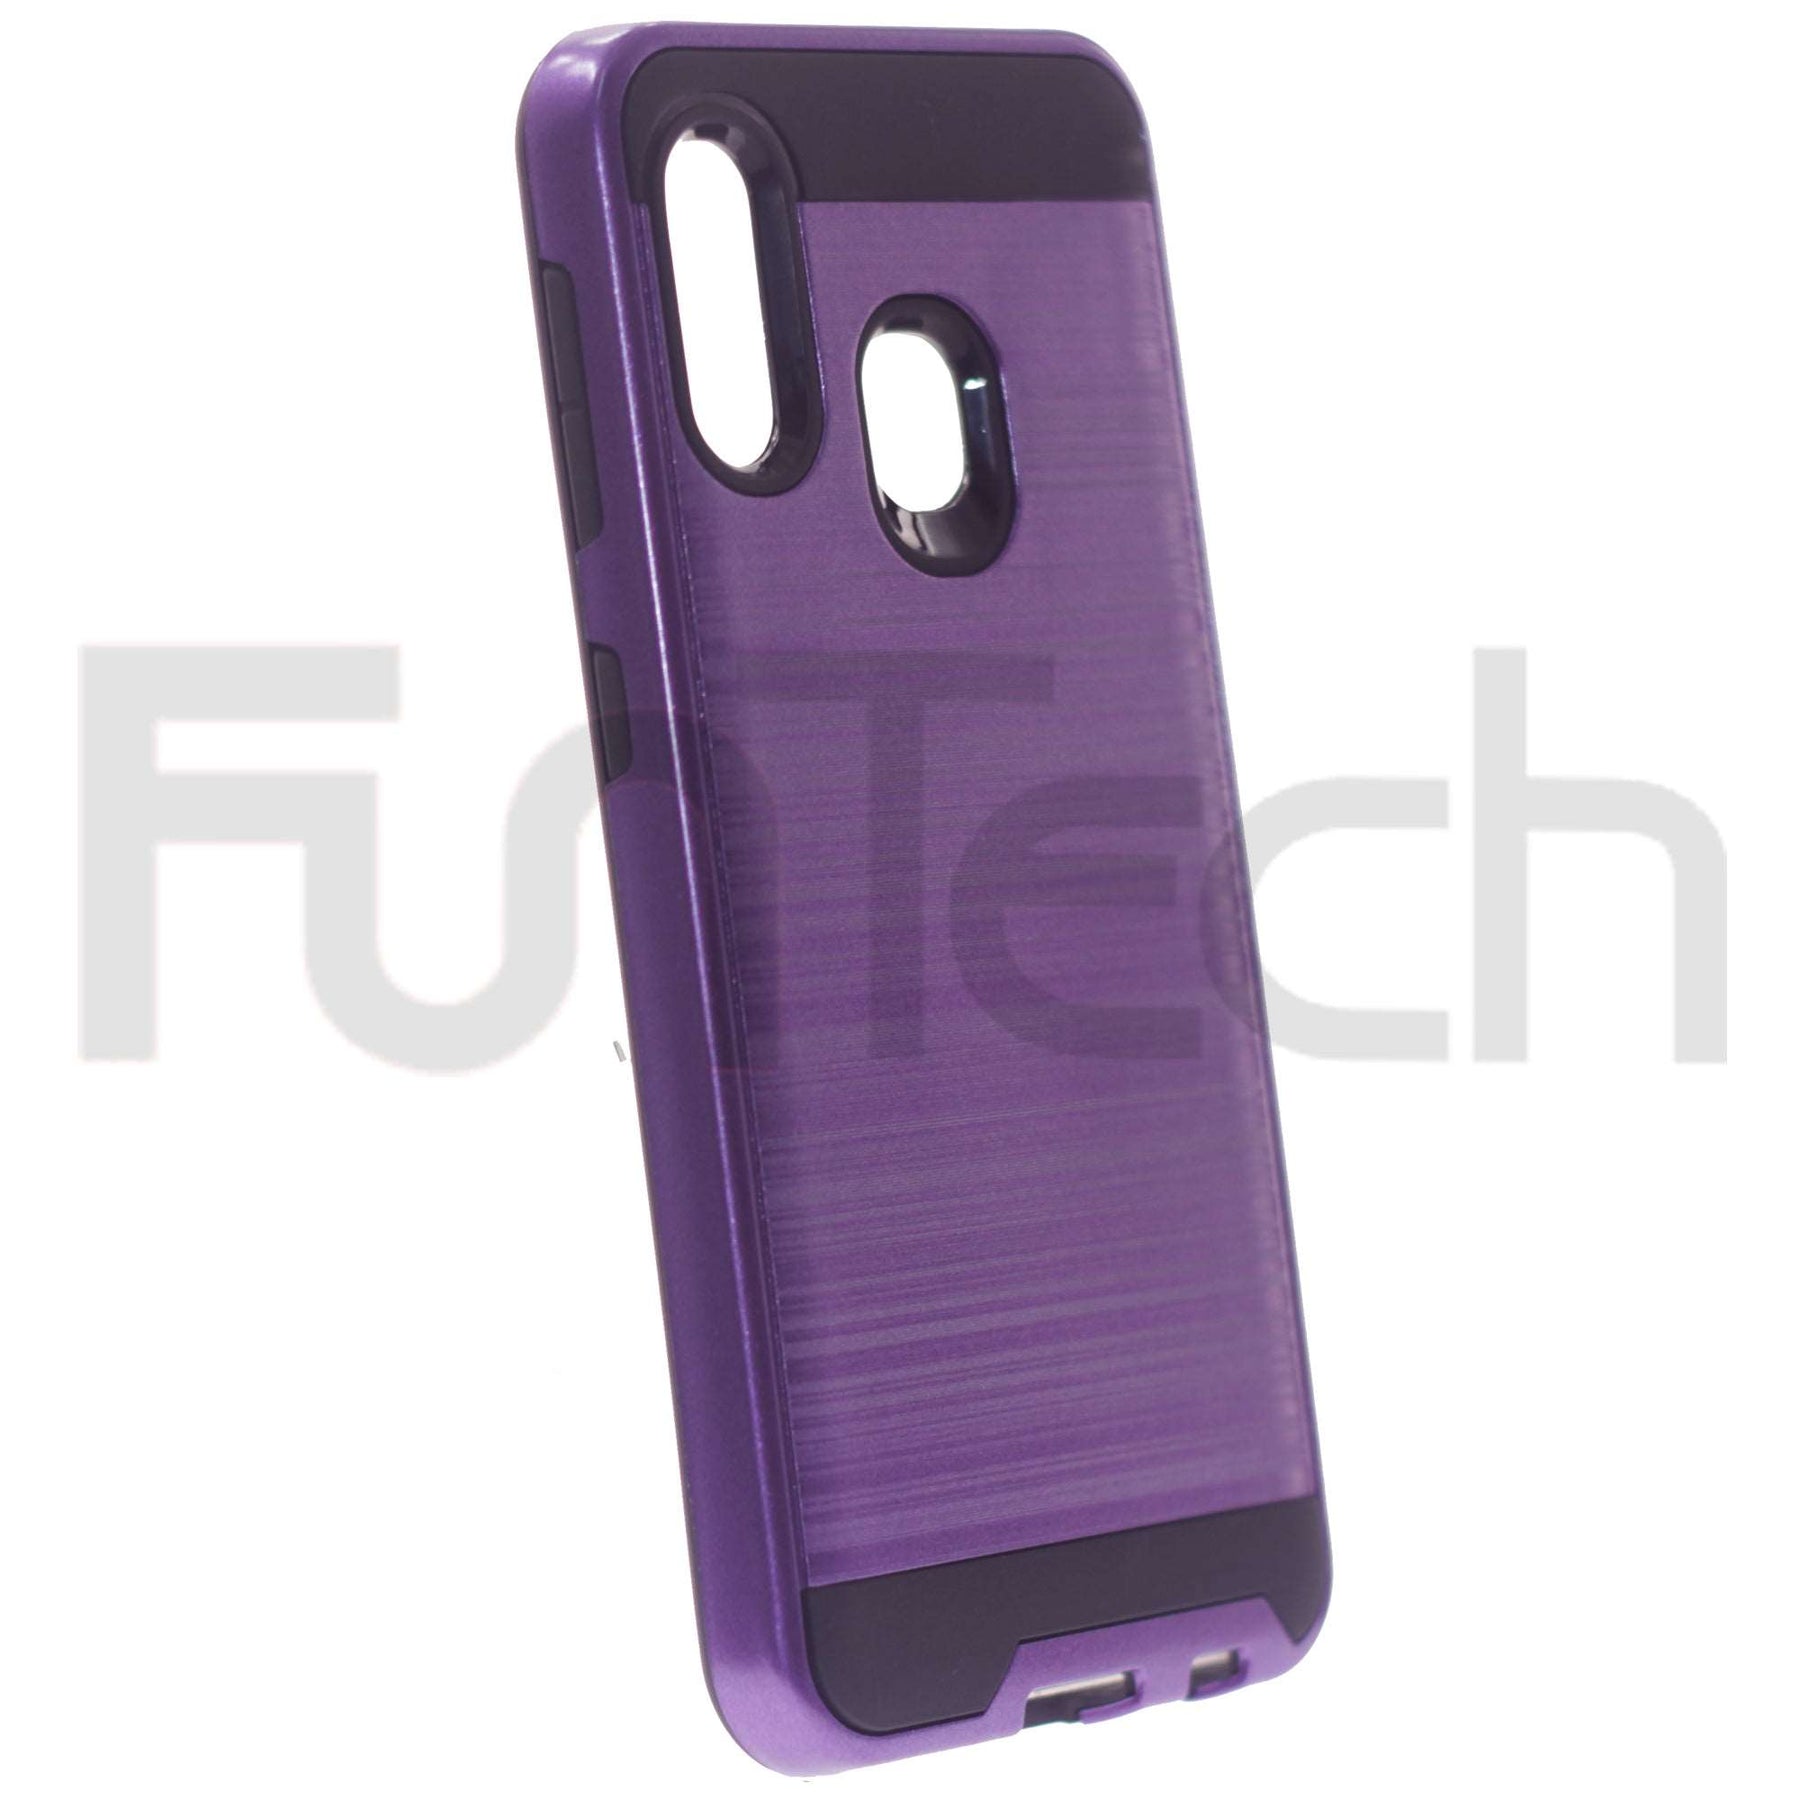 Samsung A10E, A20E, Slim Armor Case, Color Purple.